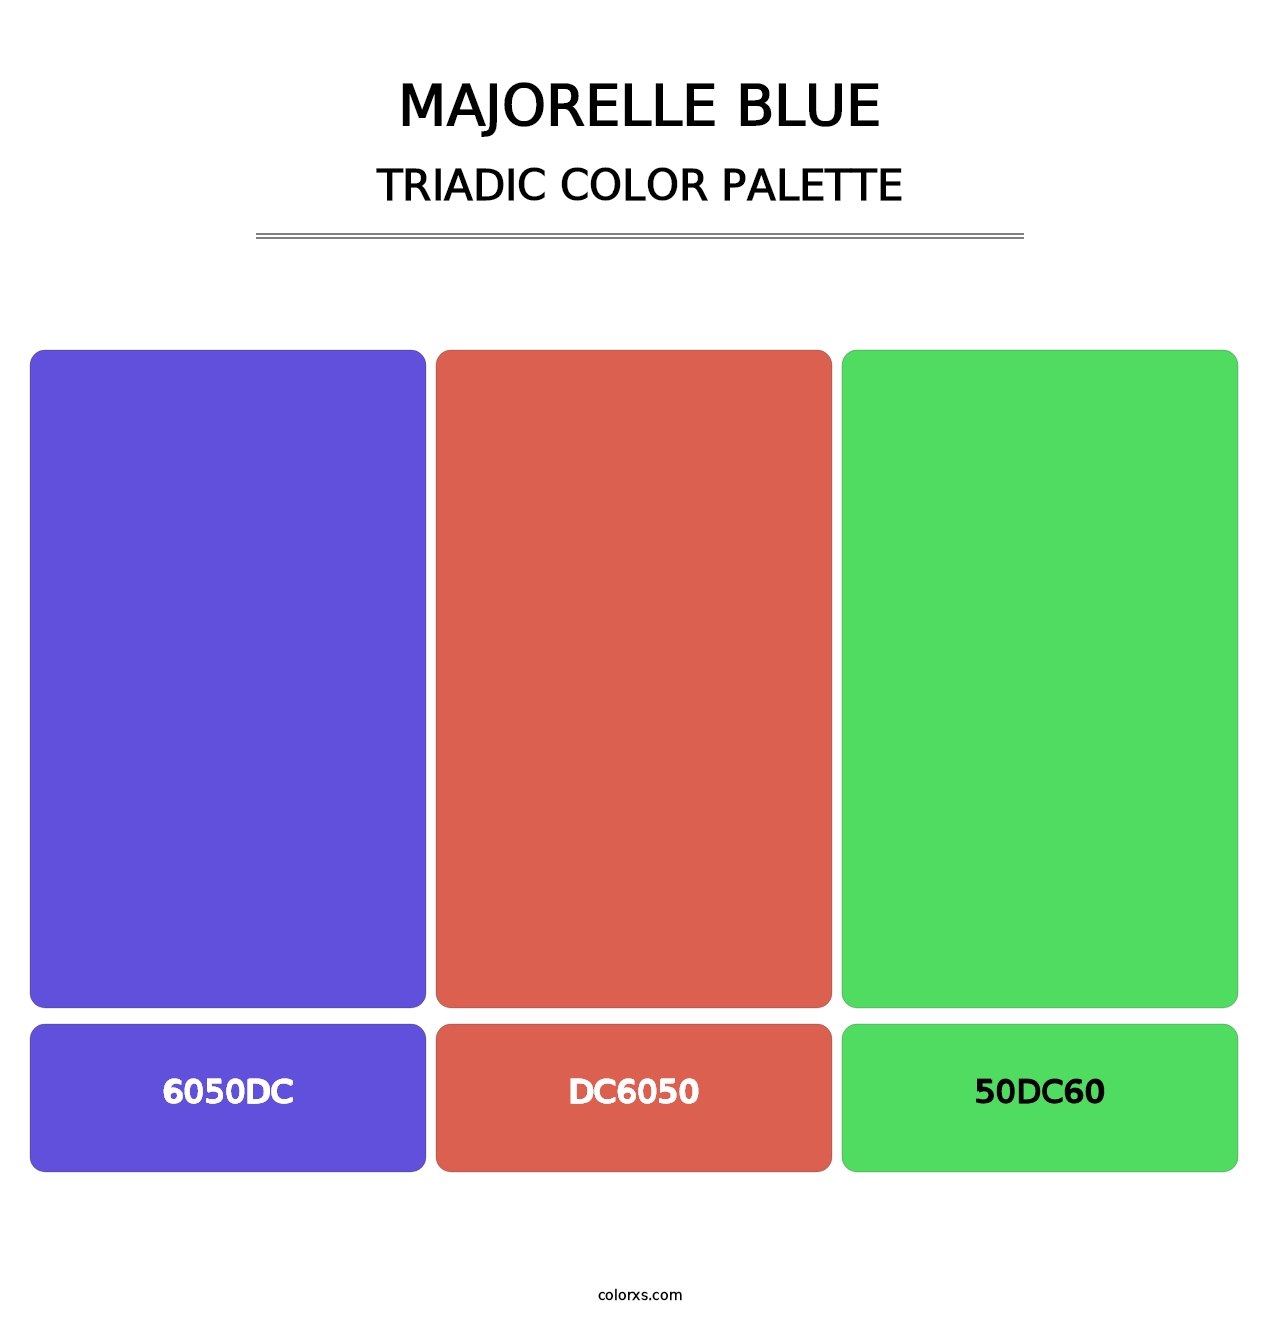 Majorelle Blue - Triadic Color Palette